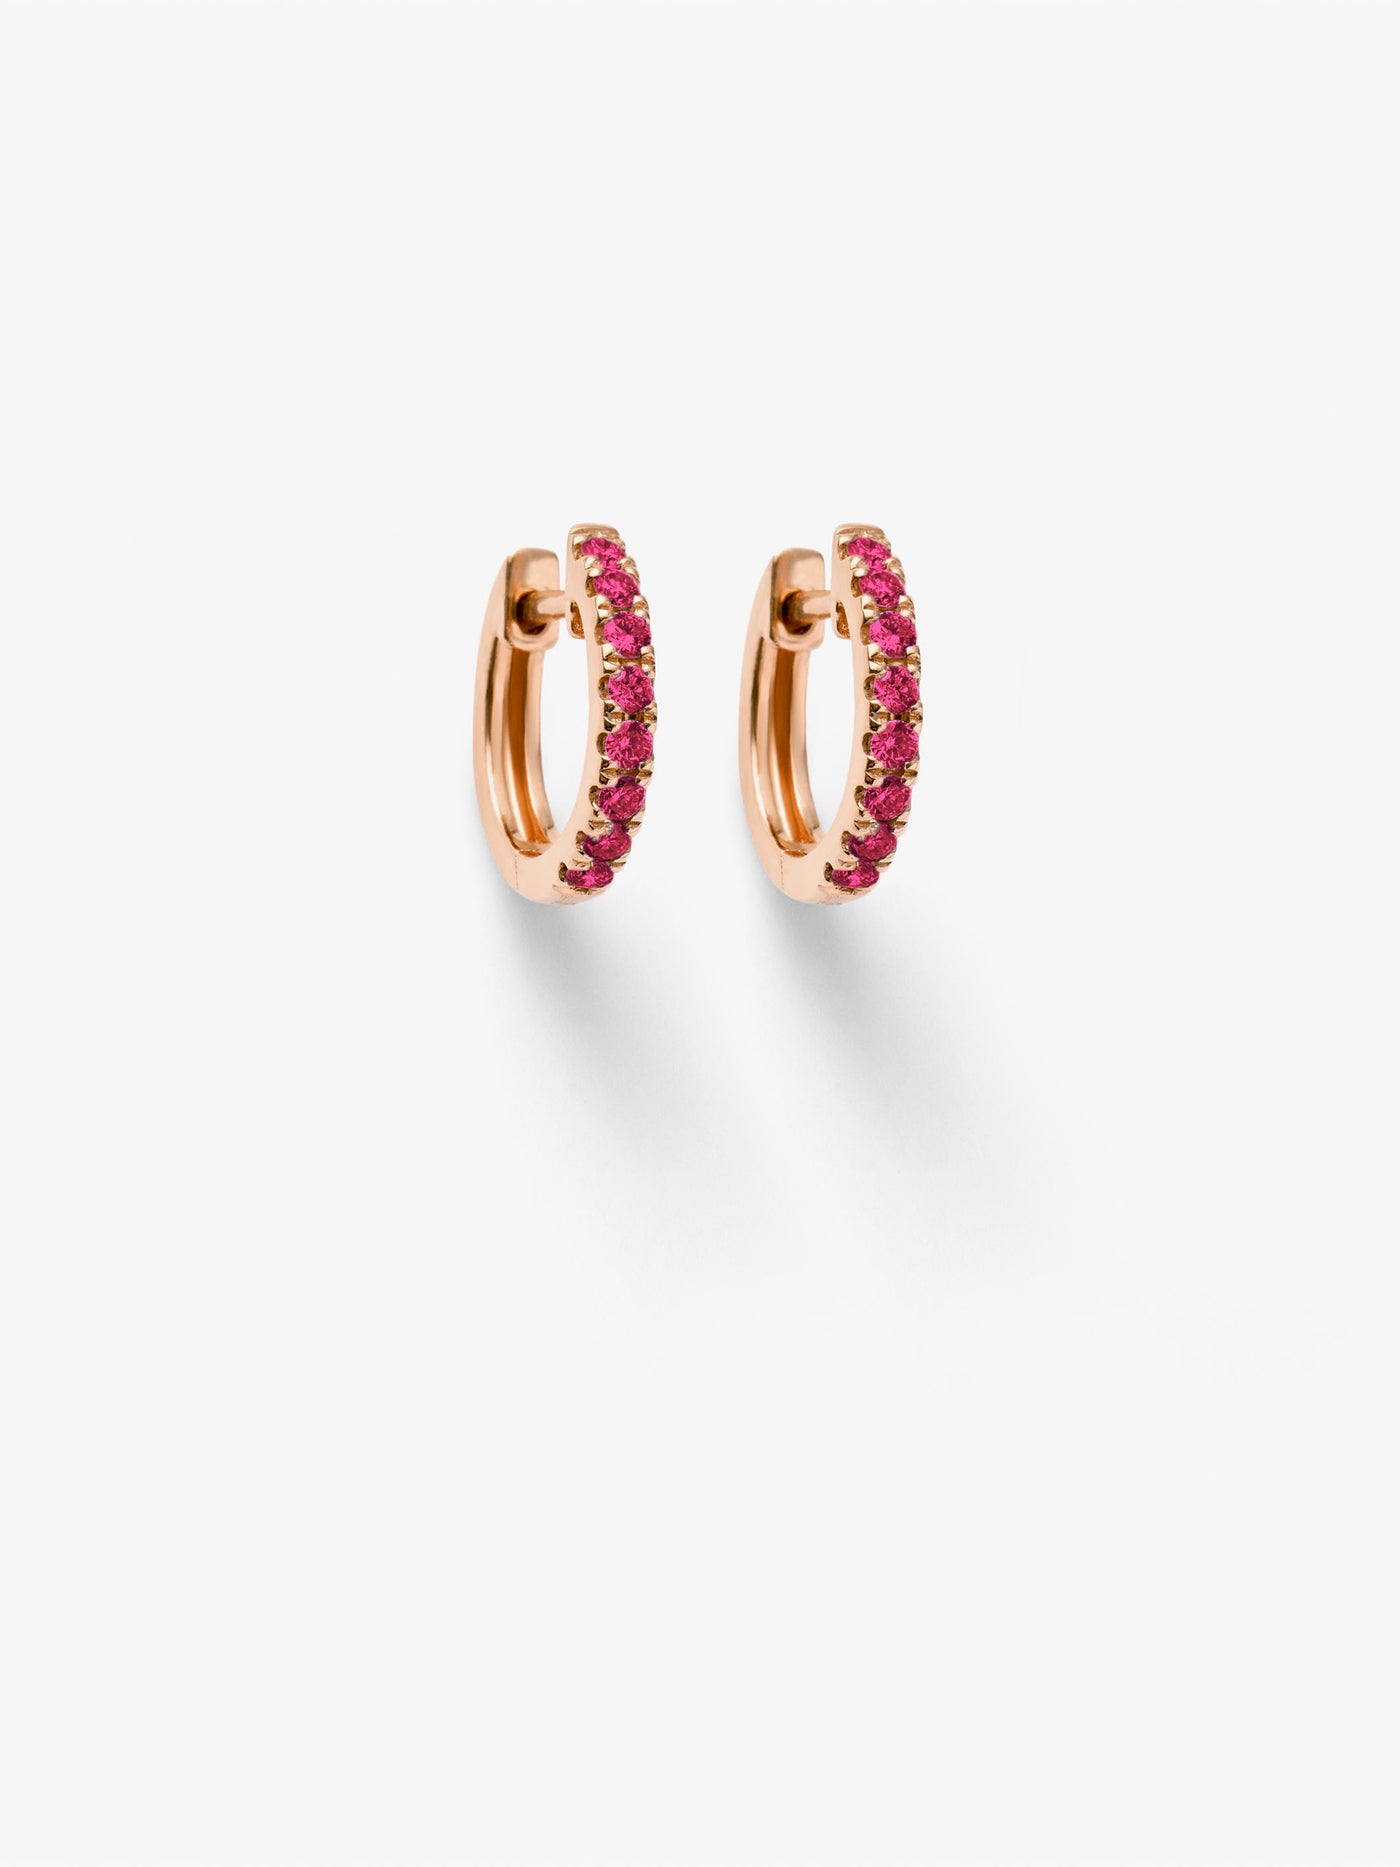 Huggie Earrings in Ruby and 18k Rose Gold